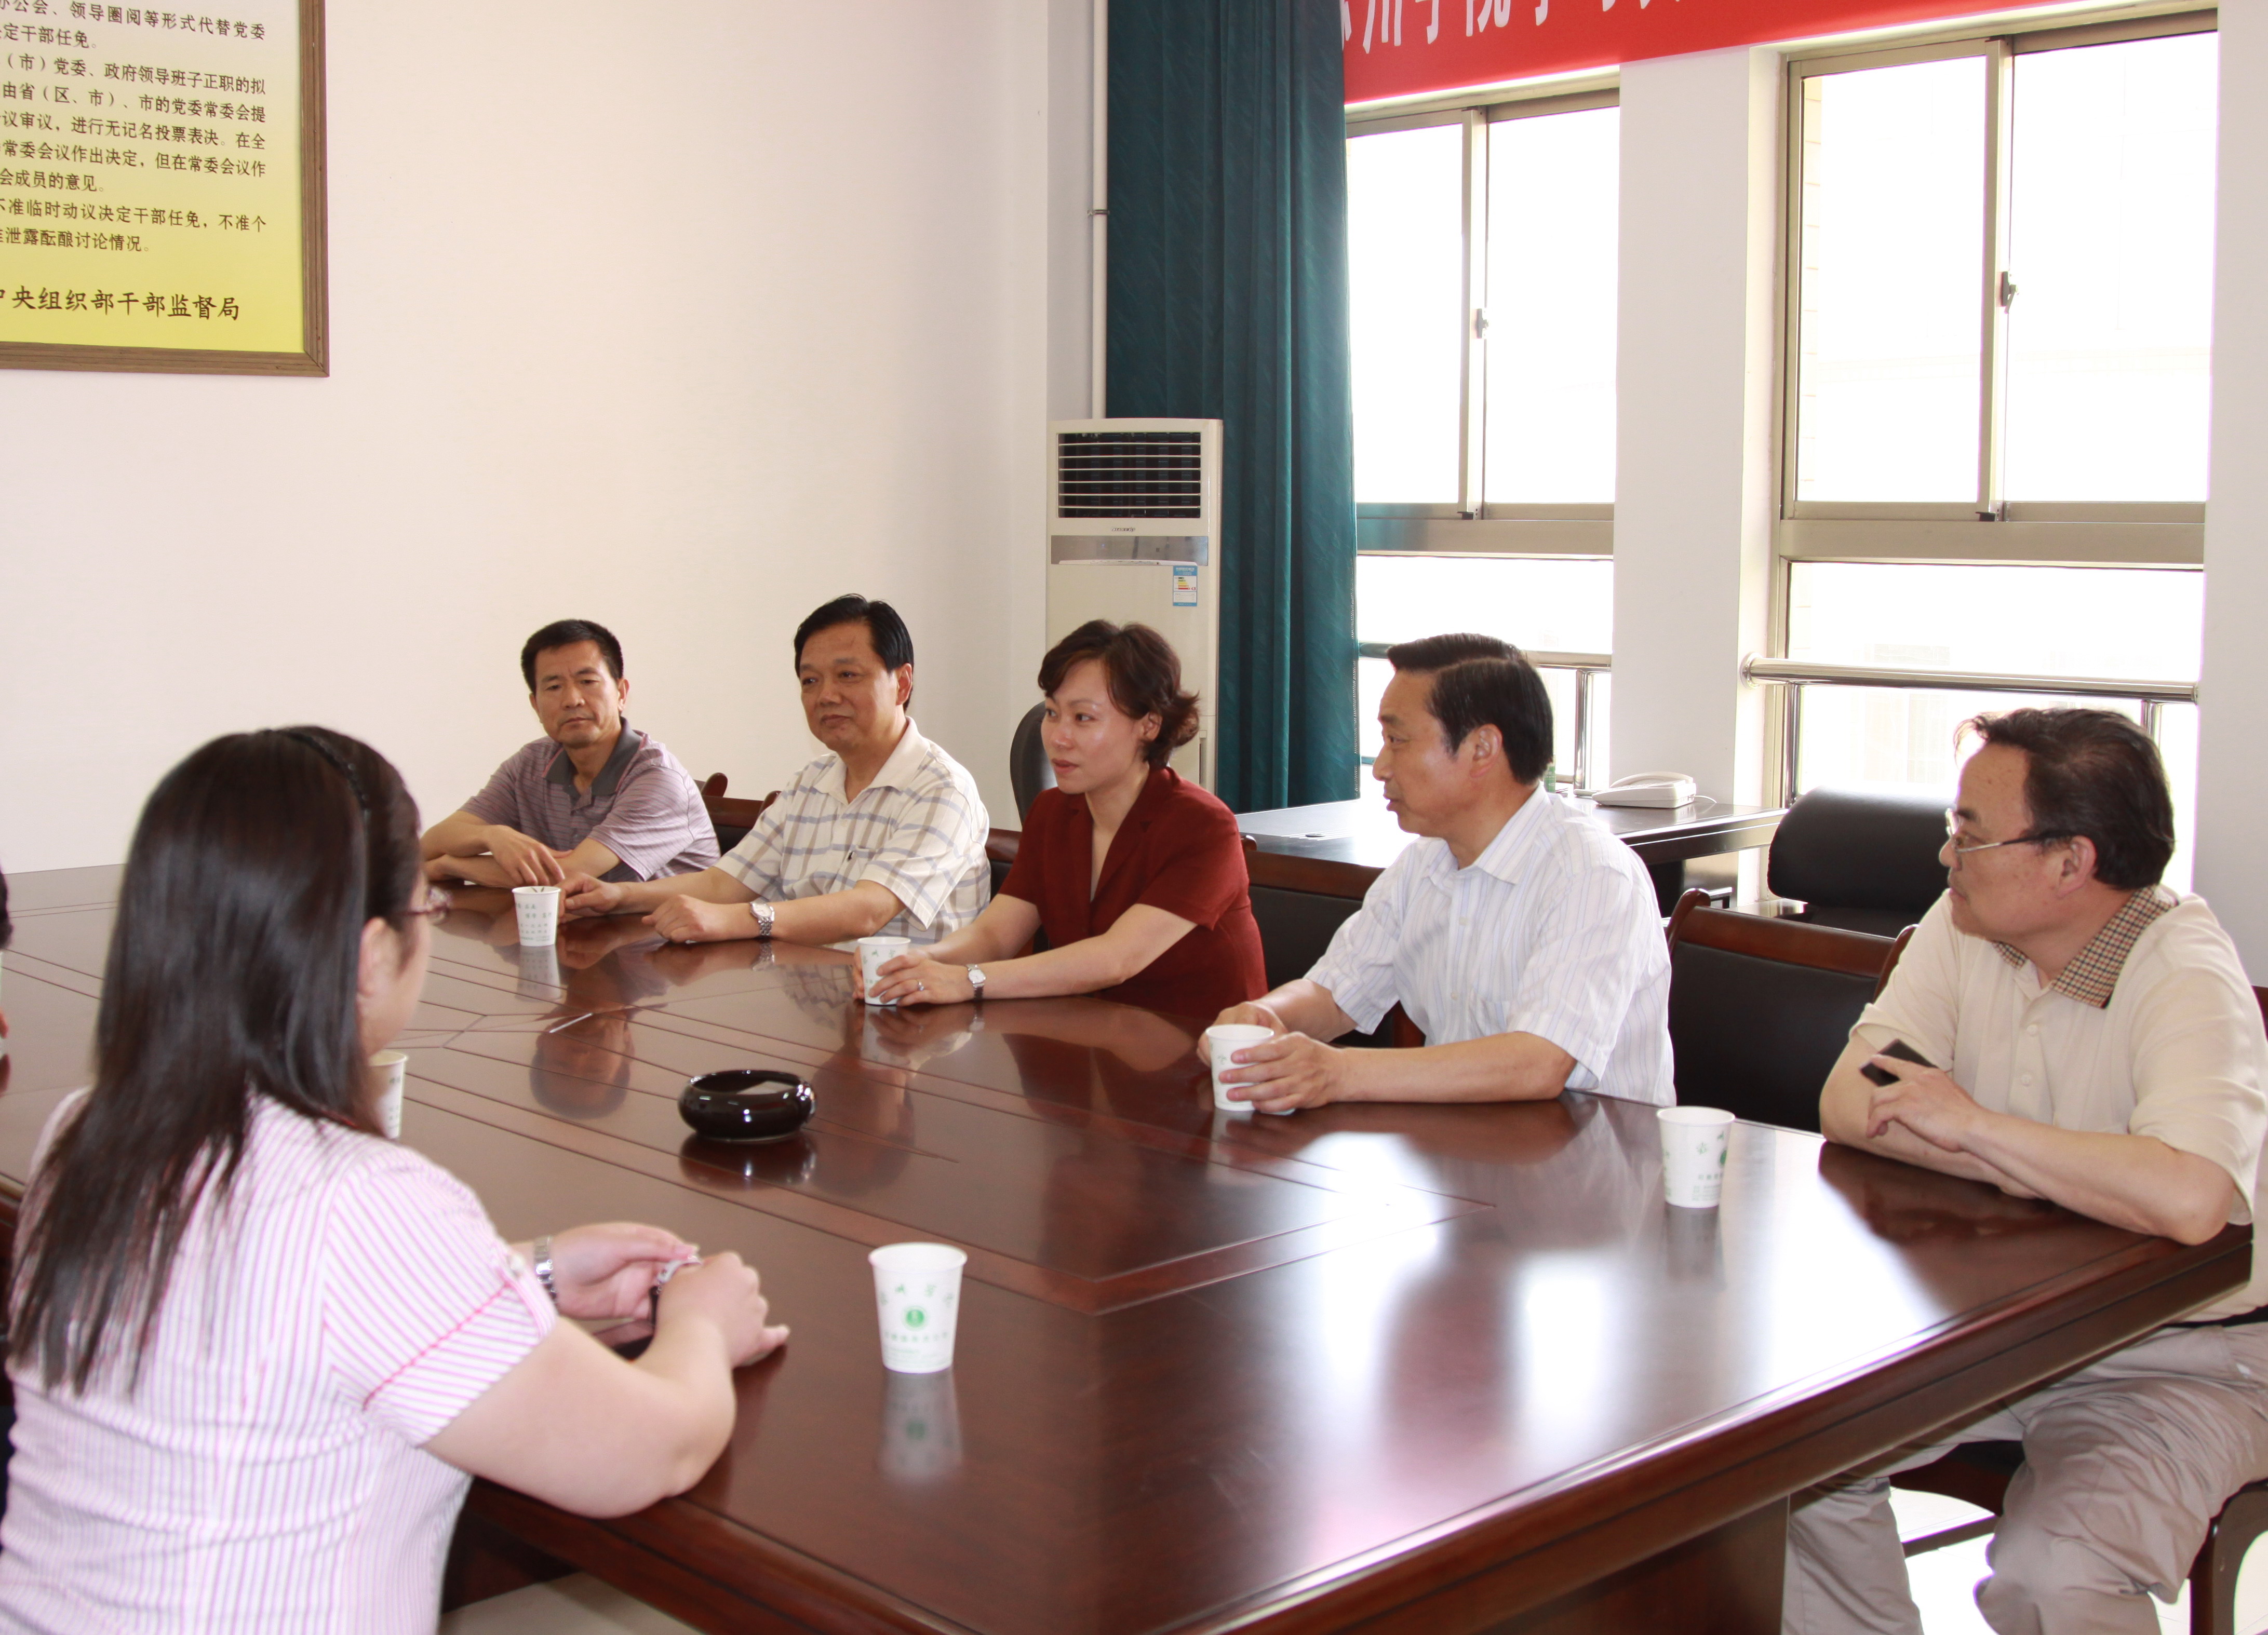 6月16日,共青团安徽省委书记王宏到滁州学院调研指导团学工作.